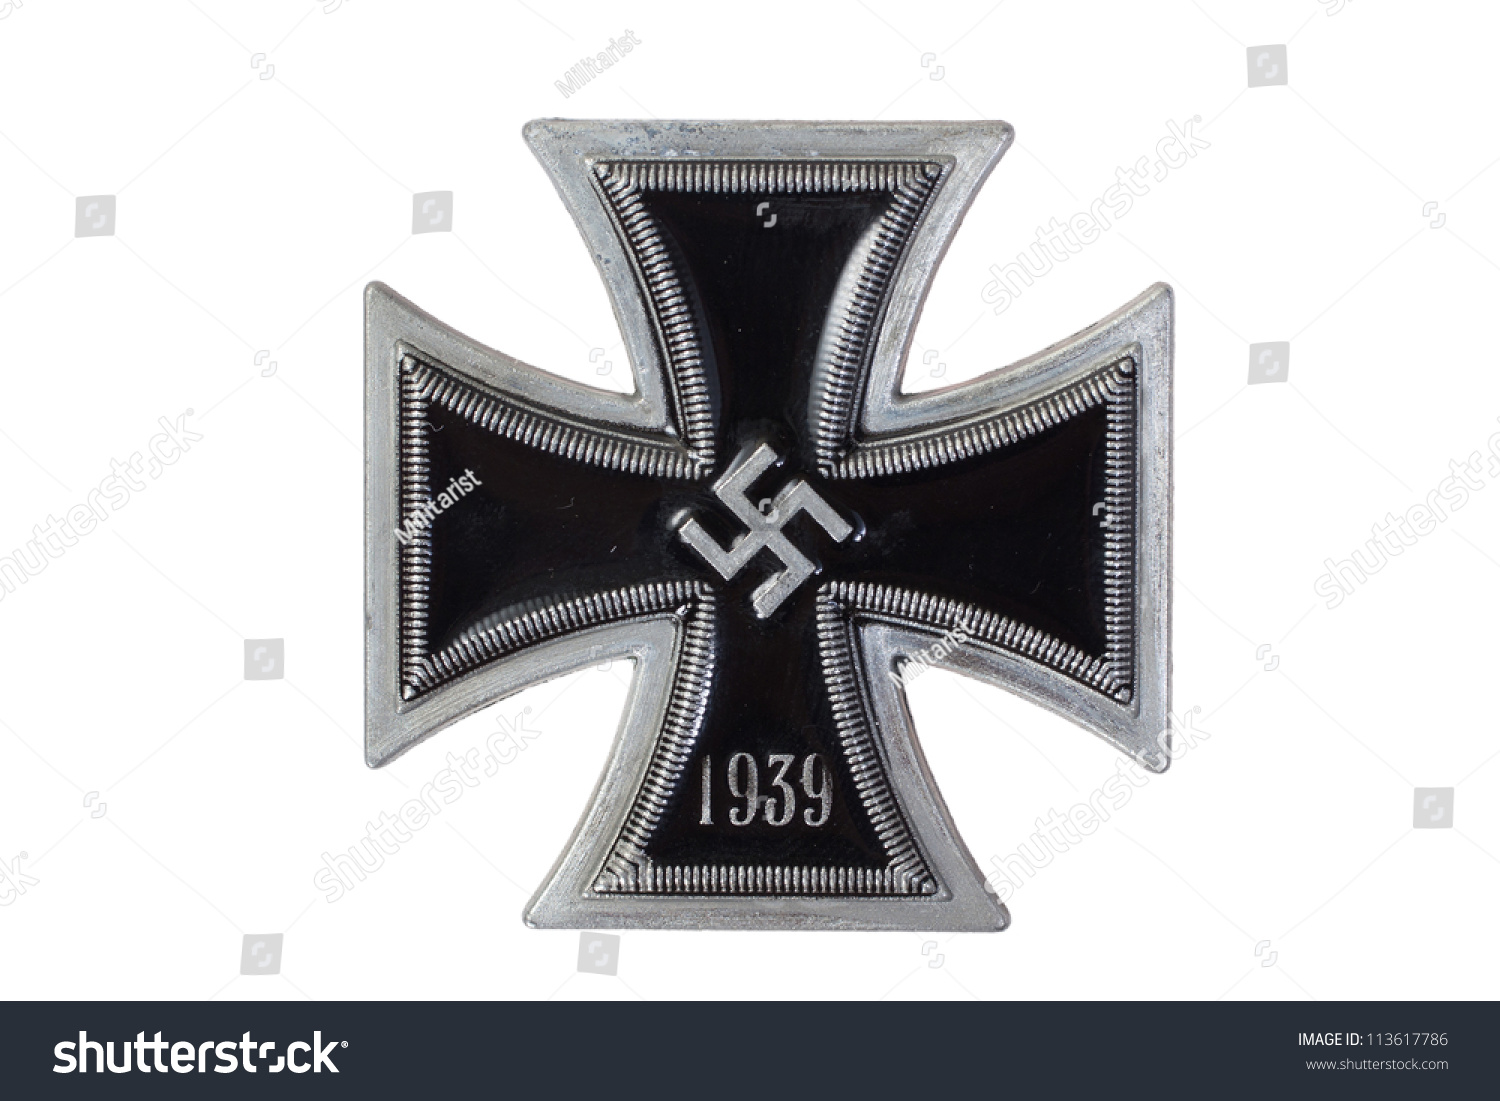 纳粹德国铁十字勋章-物体,复古风格-海洛创意(